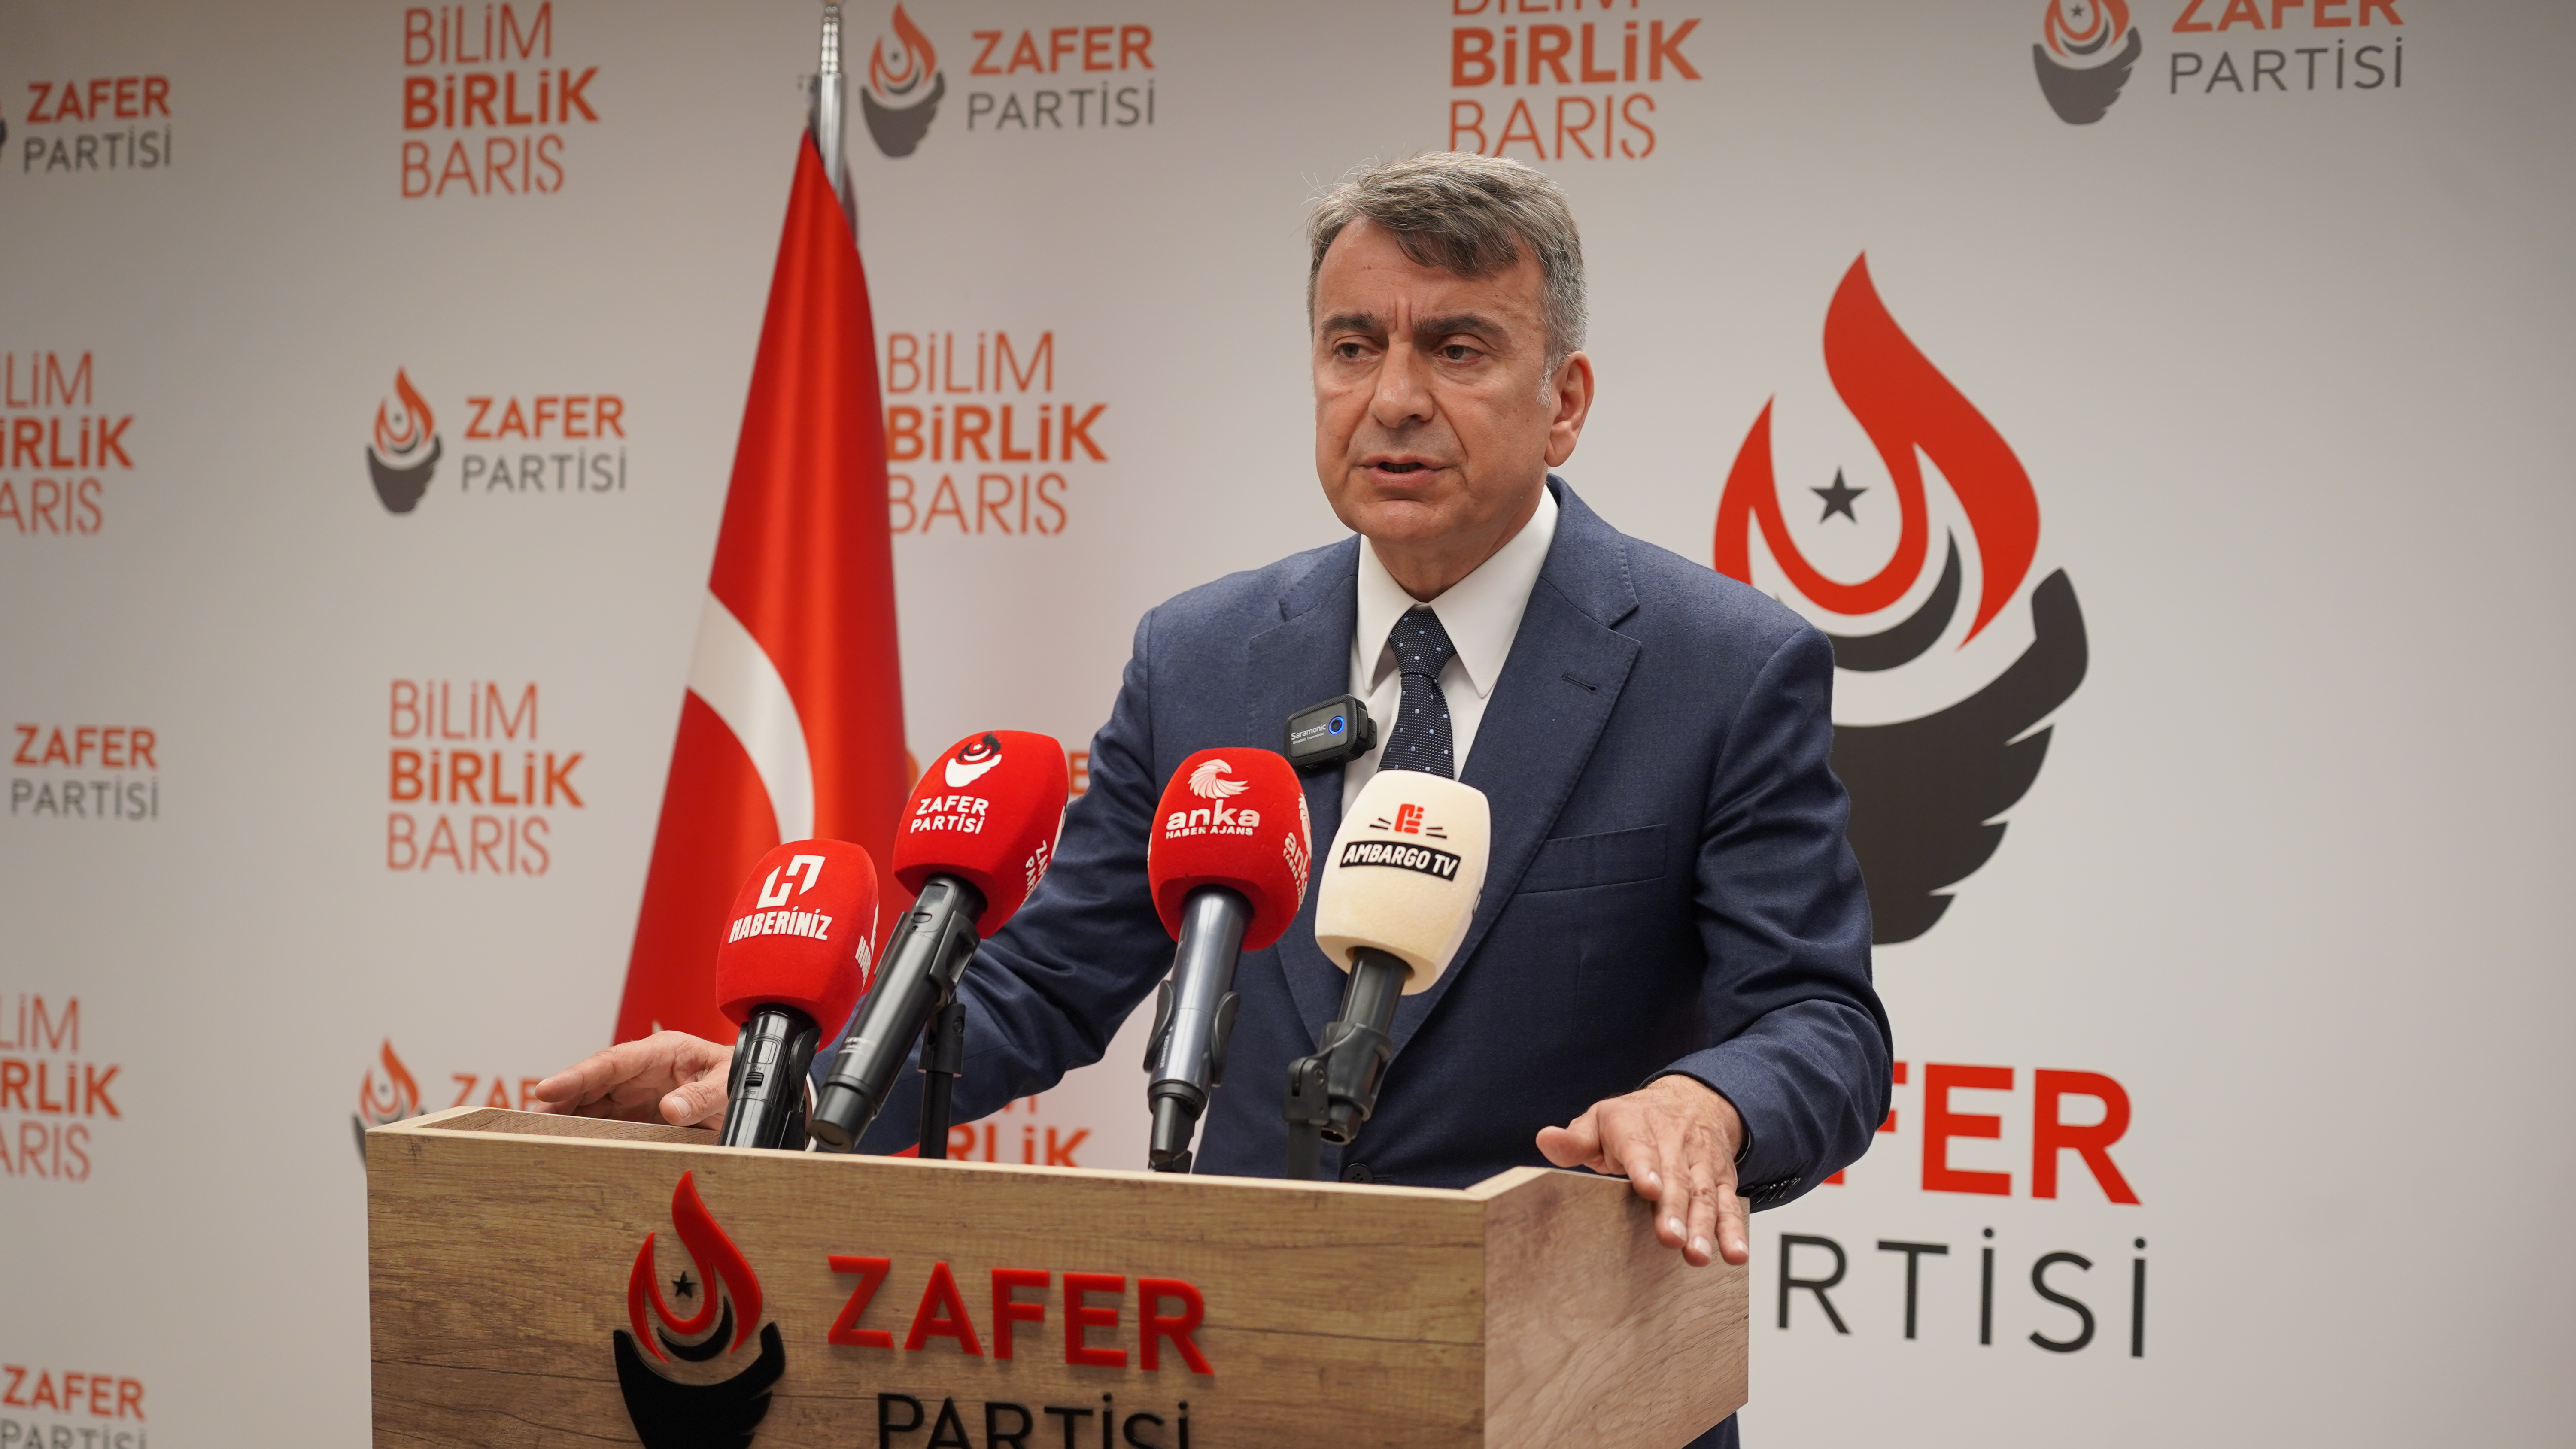 Zafer Partisi Sözcüsü Azmi Karamahmutoğlu, Türkiye’nin tarım politikalarına ve ekonomik krizine yönelik eleştirilerde bulundu.